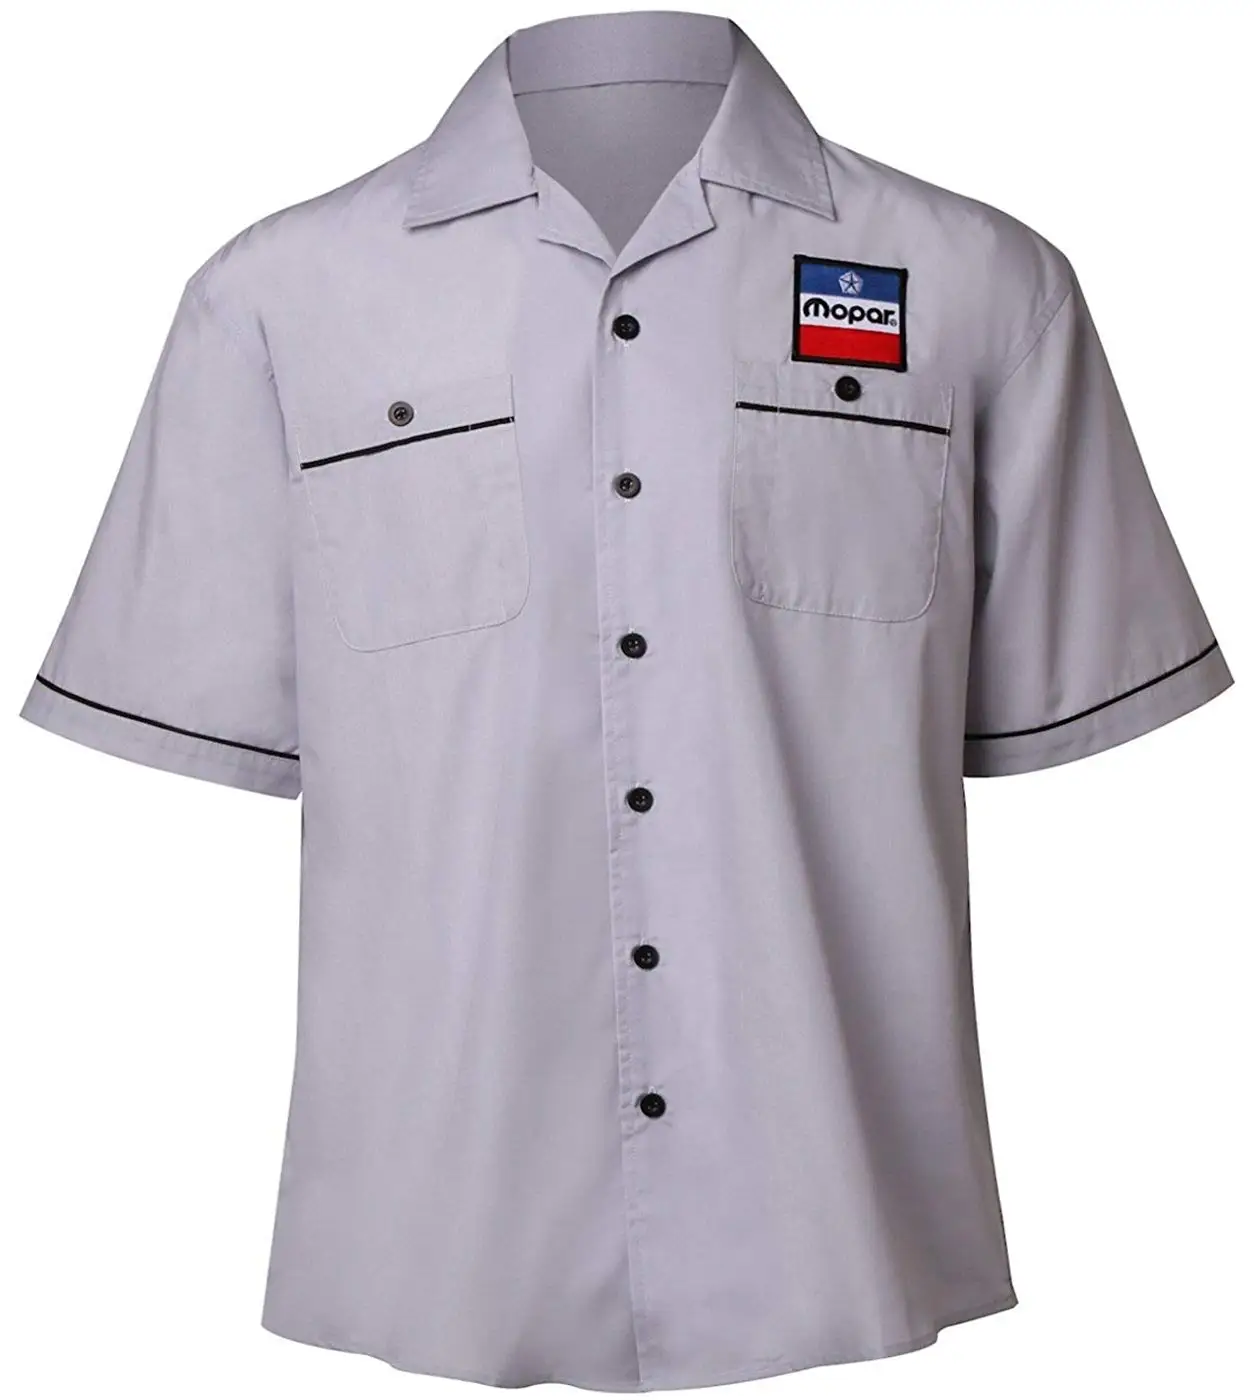 Cheap Mopar T Shirt, find Mopar T Shirt deals on line at Alibaba.com